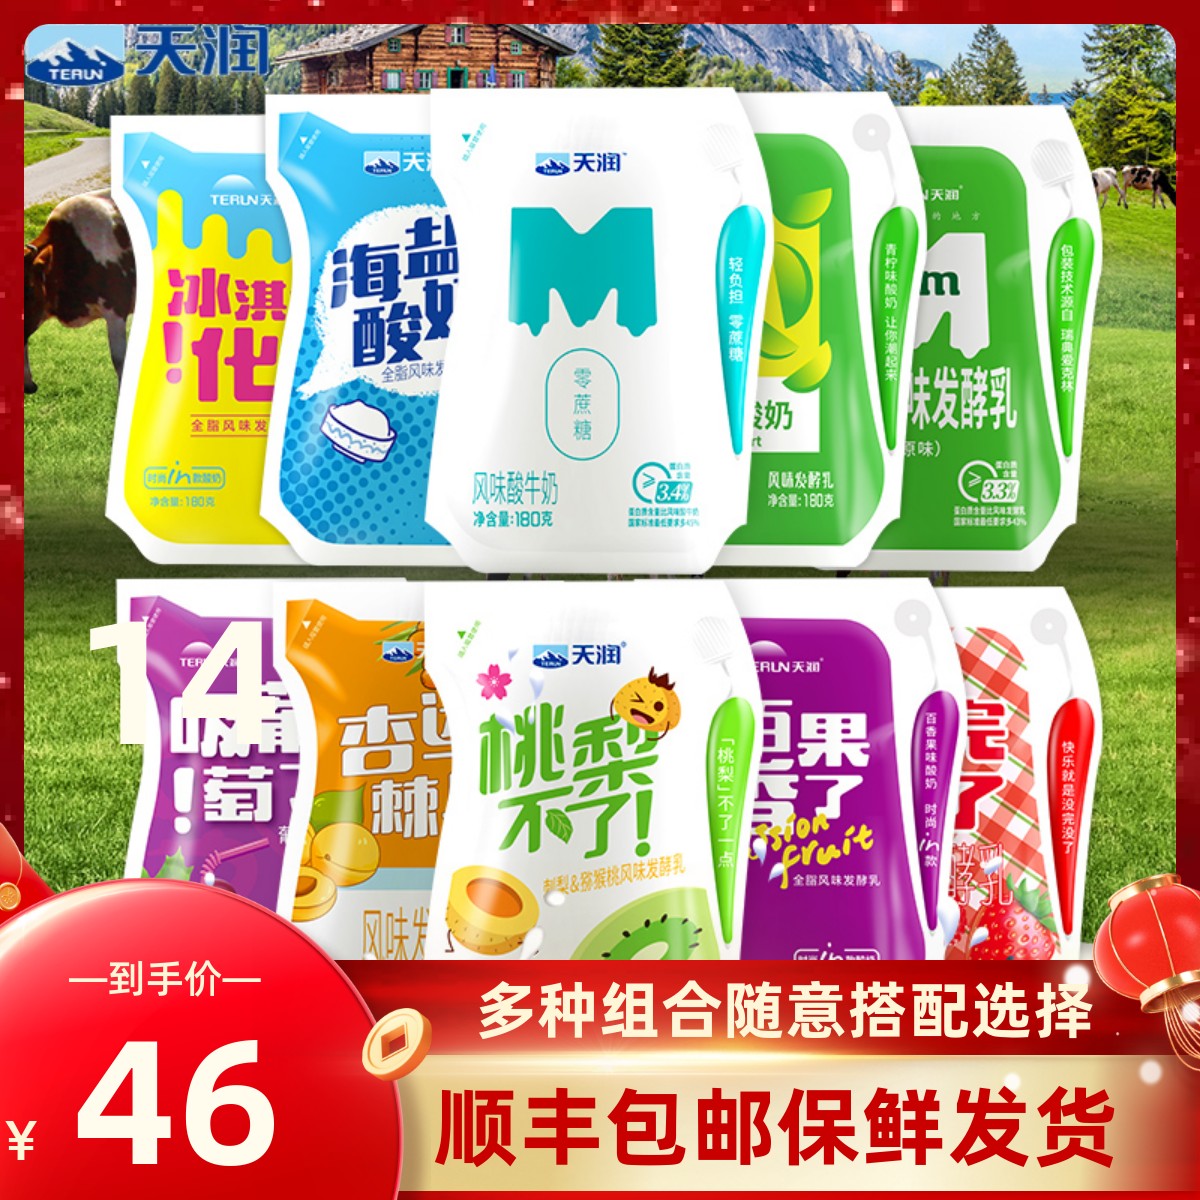 12袋 180g terun新疆天润酸奶浓缩原味冰淇淋发酵乳低温奶整箱装